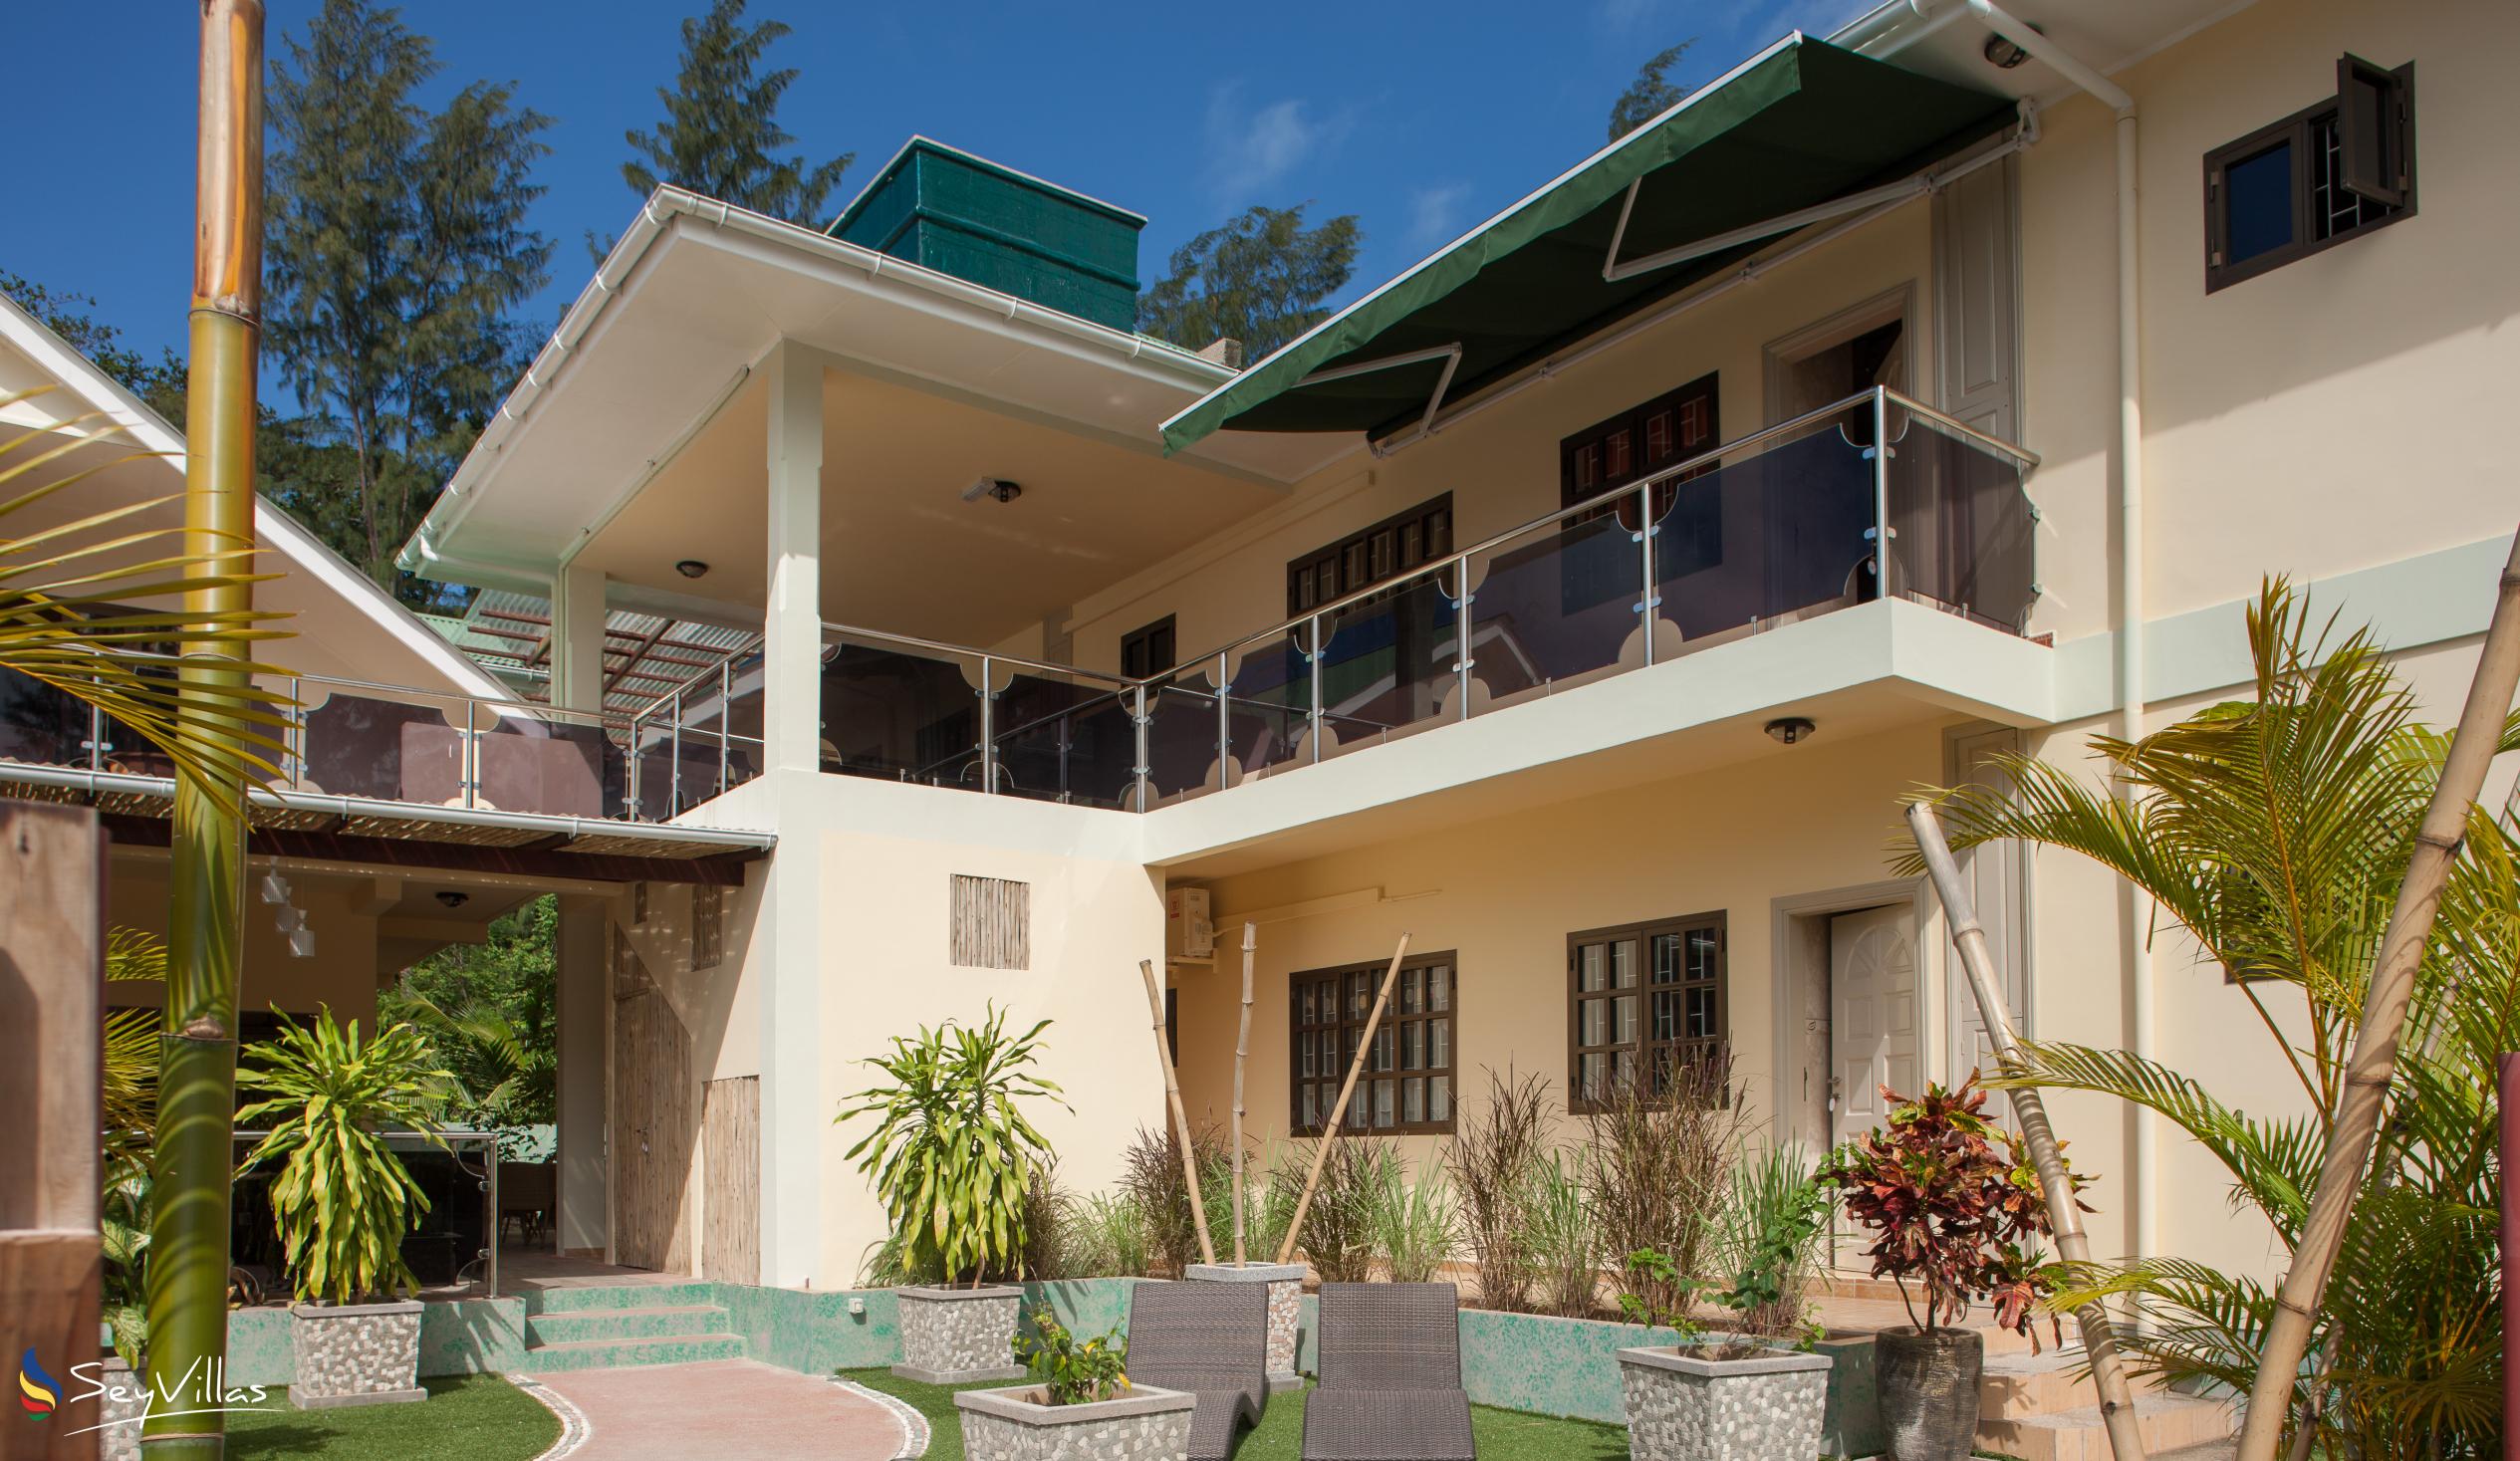 Foto 11: Chez Bea Villa - Aussenbereich - Praslin (Seychellen)